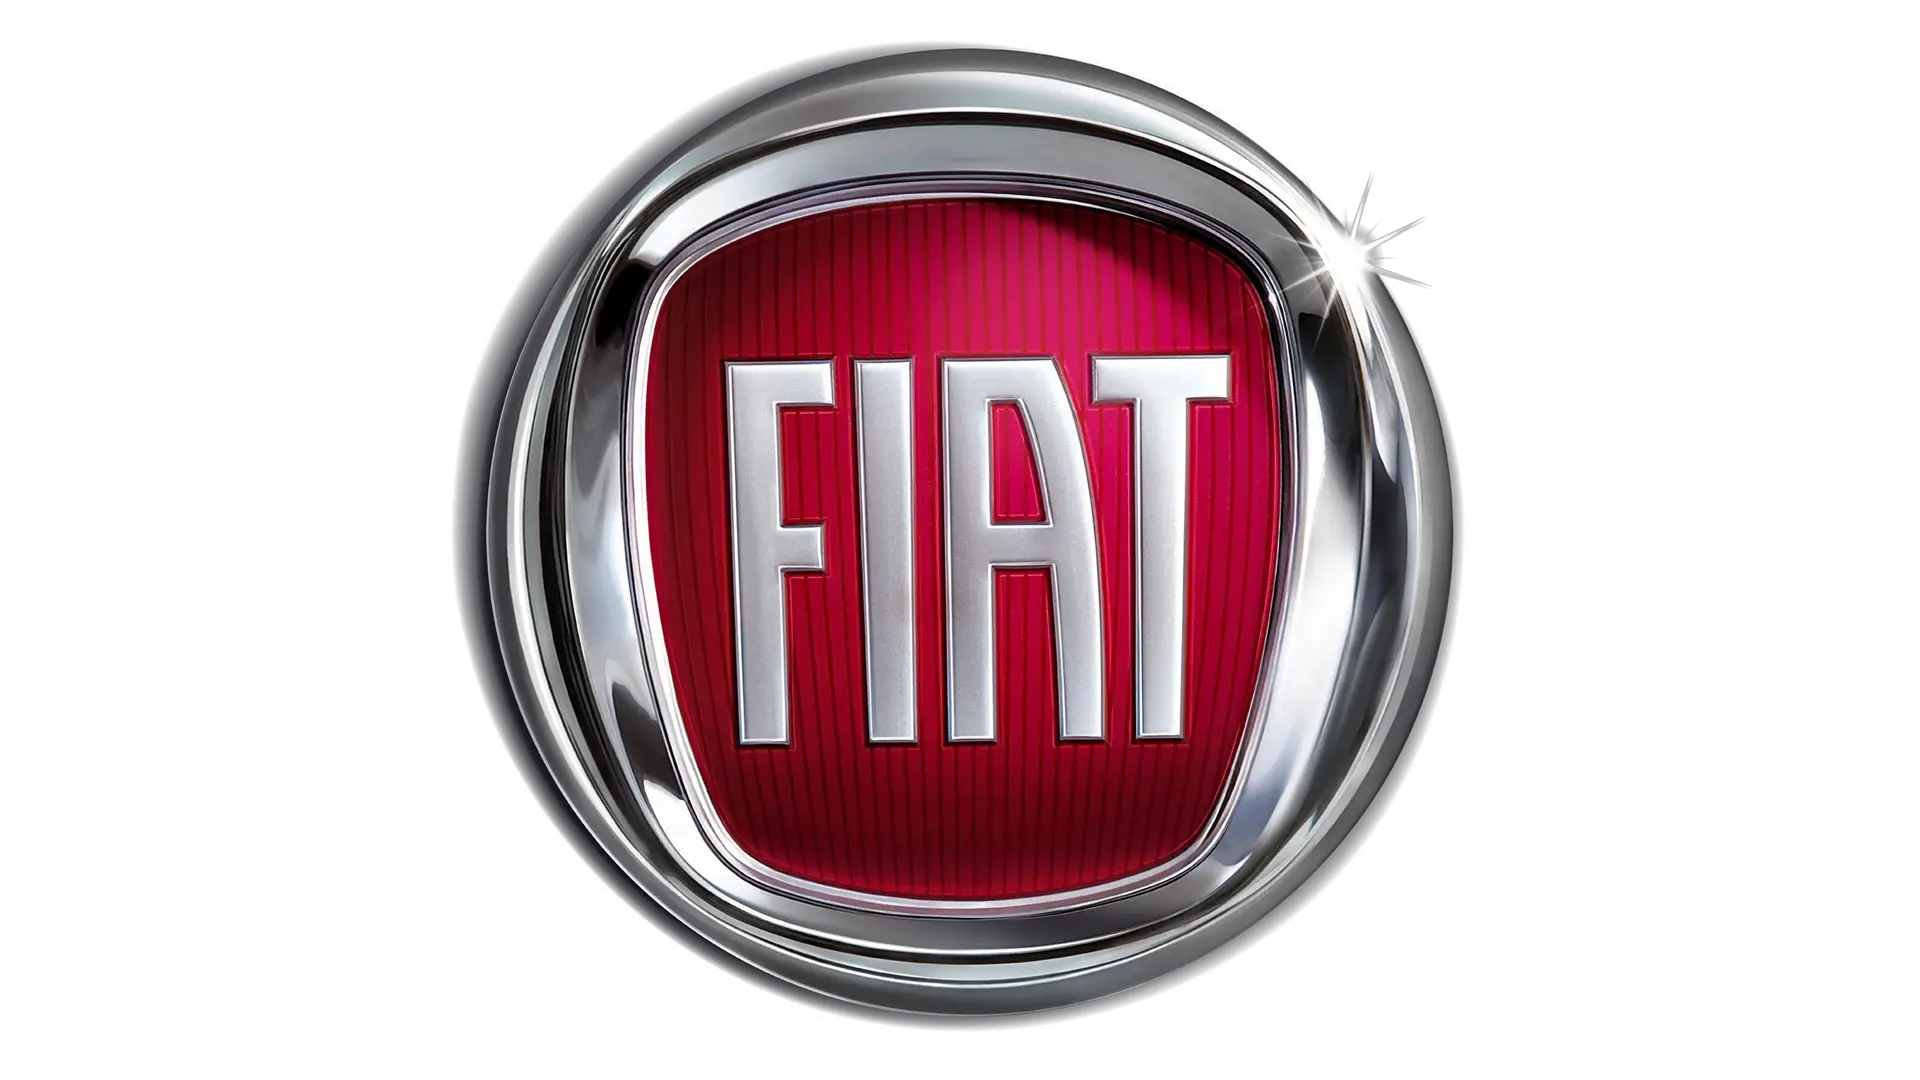 Fiat logo 2006 1920x1080 1